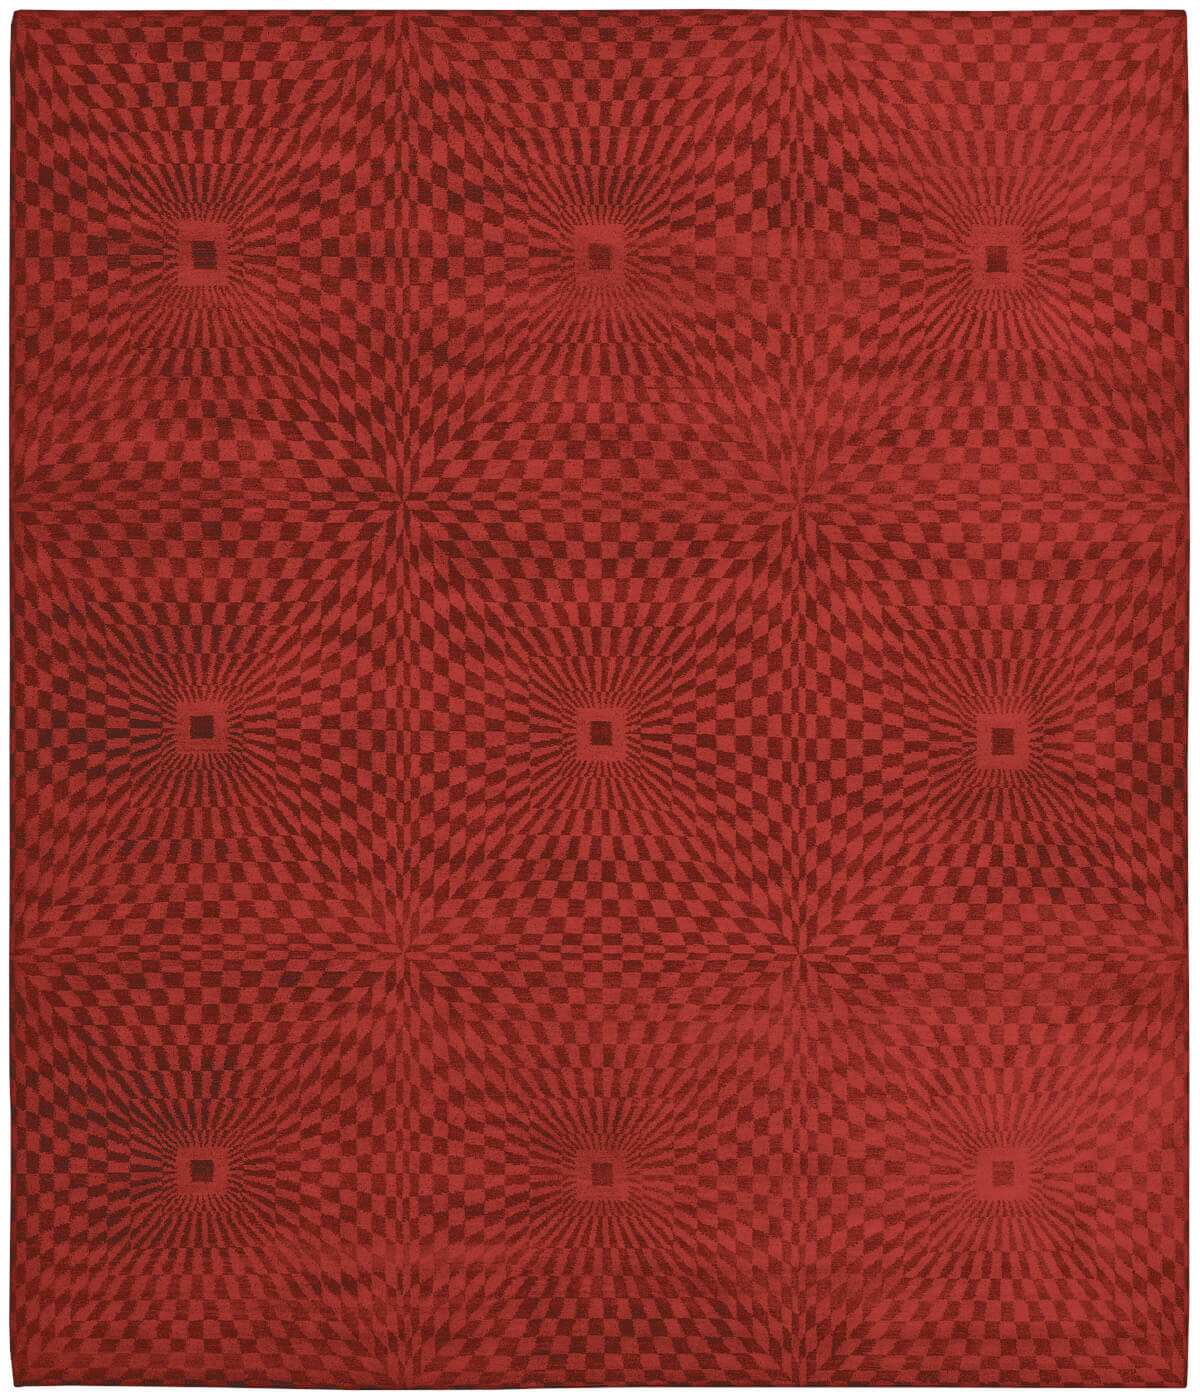 Элитный ковер Kaleidoscope красный германского бренда Jan Kath